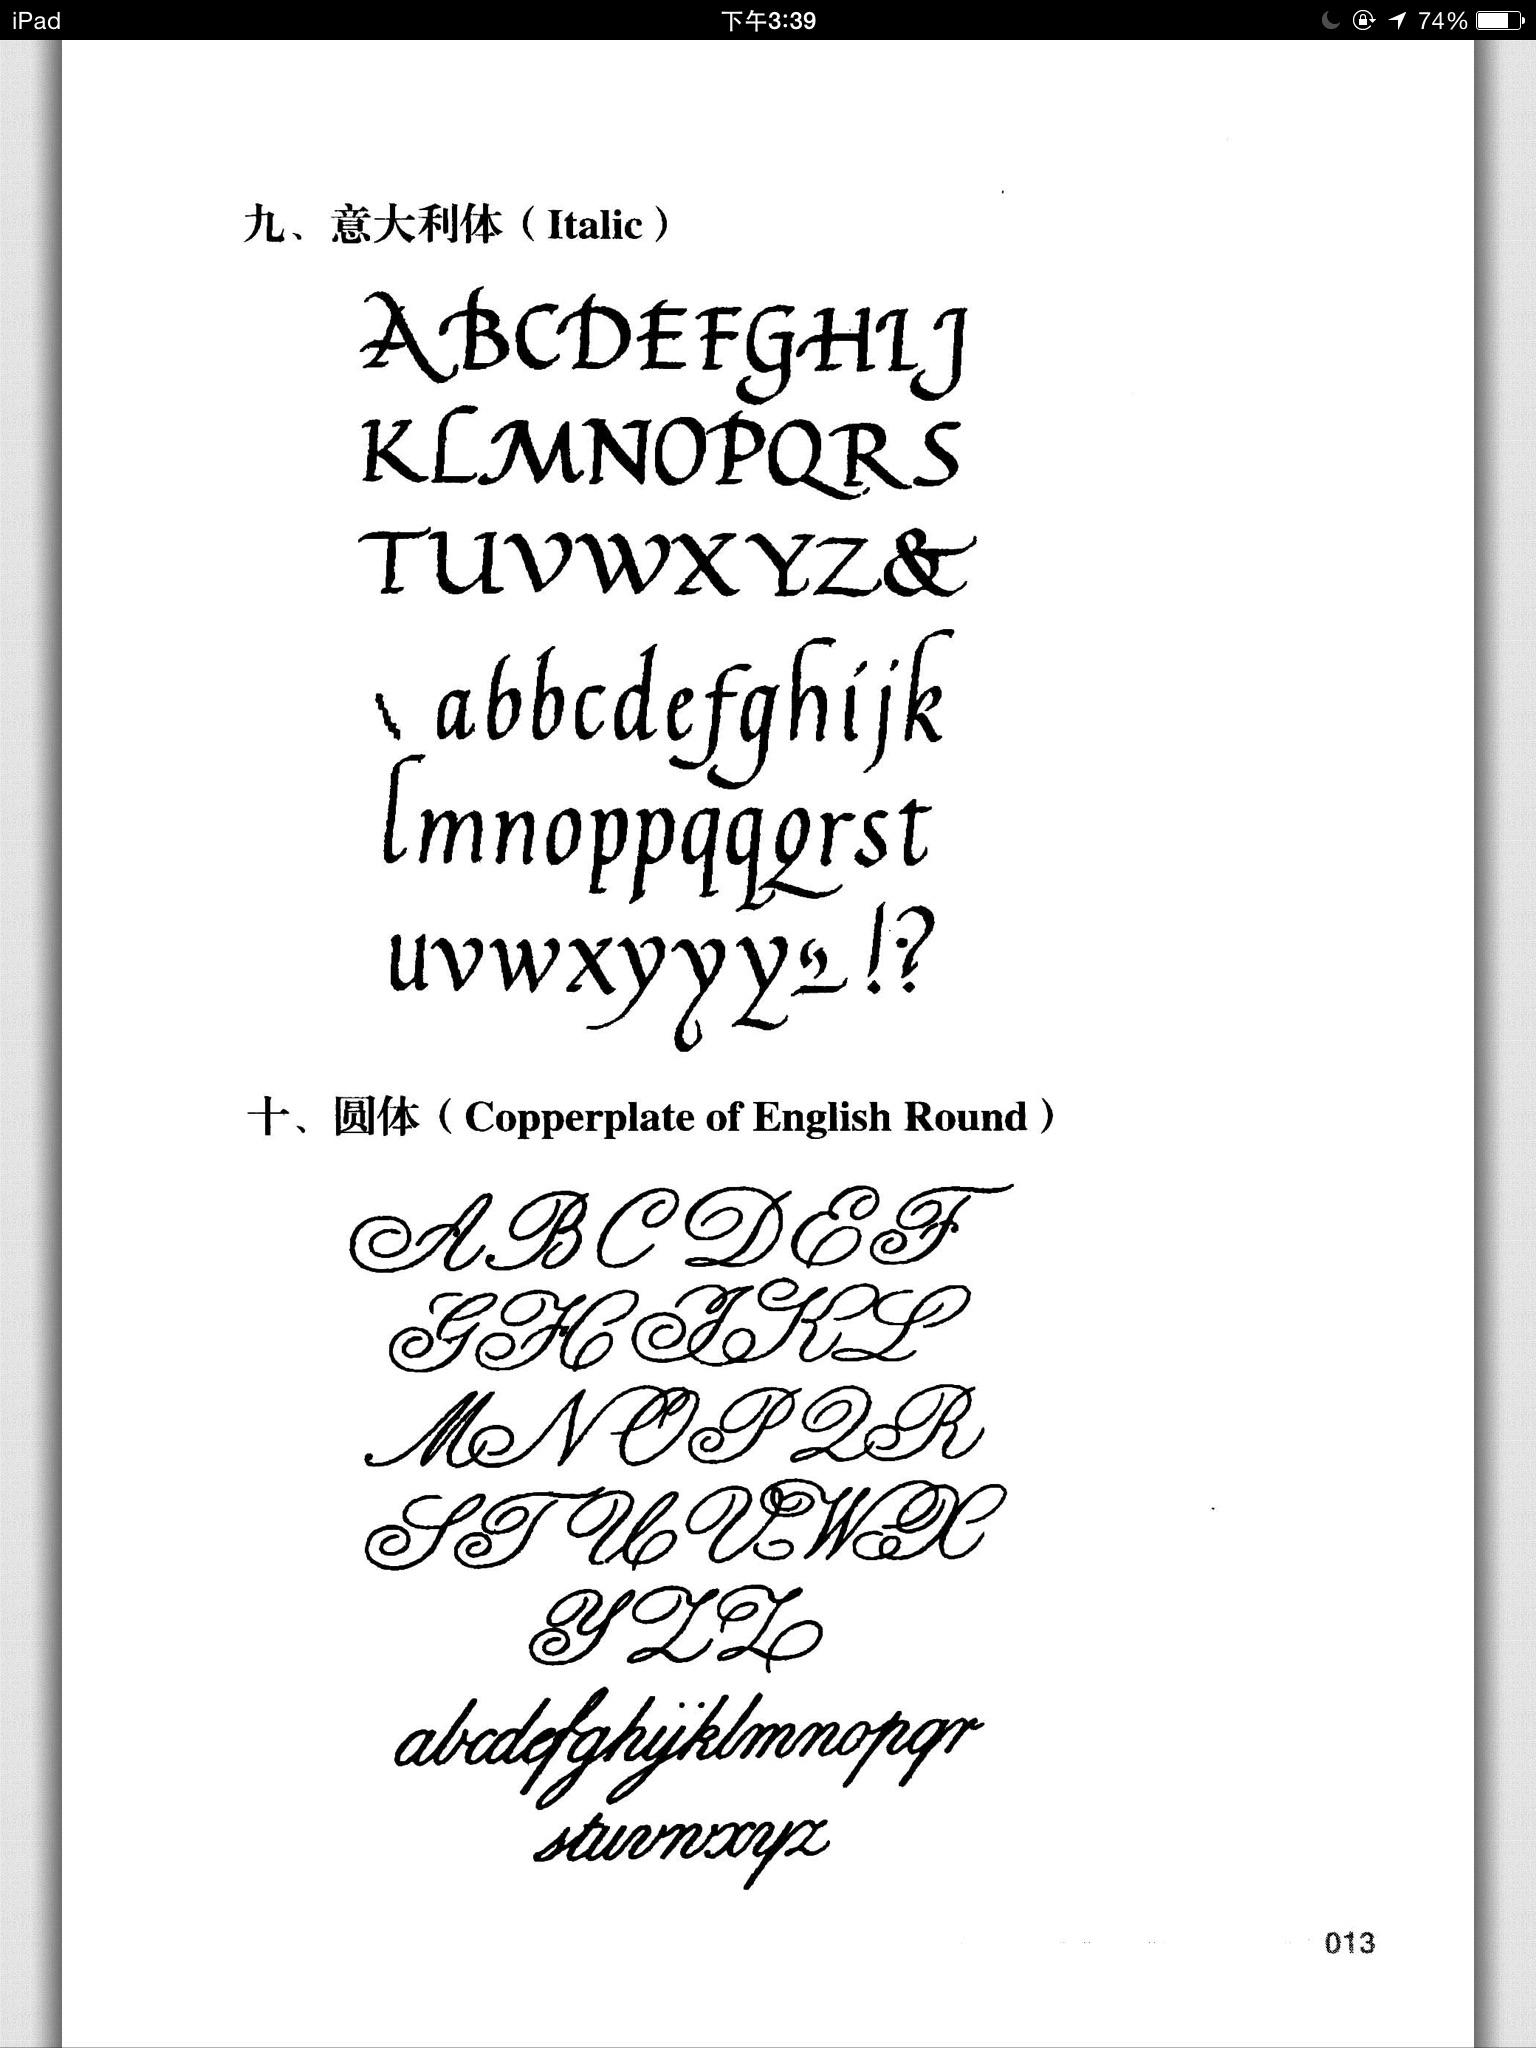 拉丁语字母表手写体图片